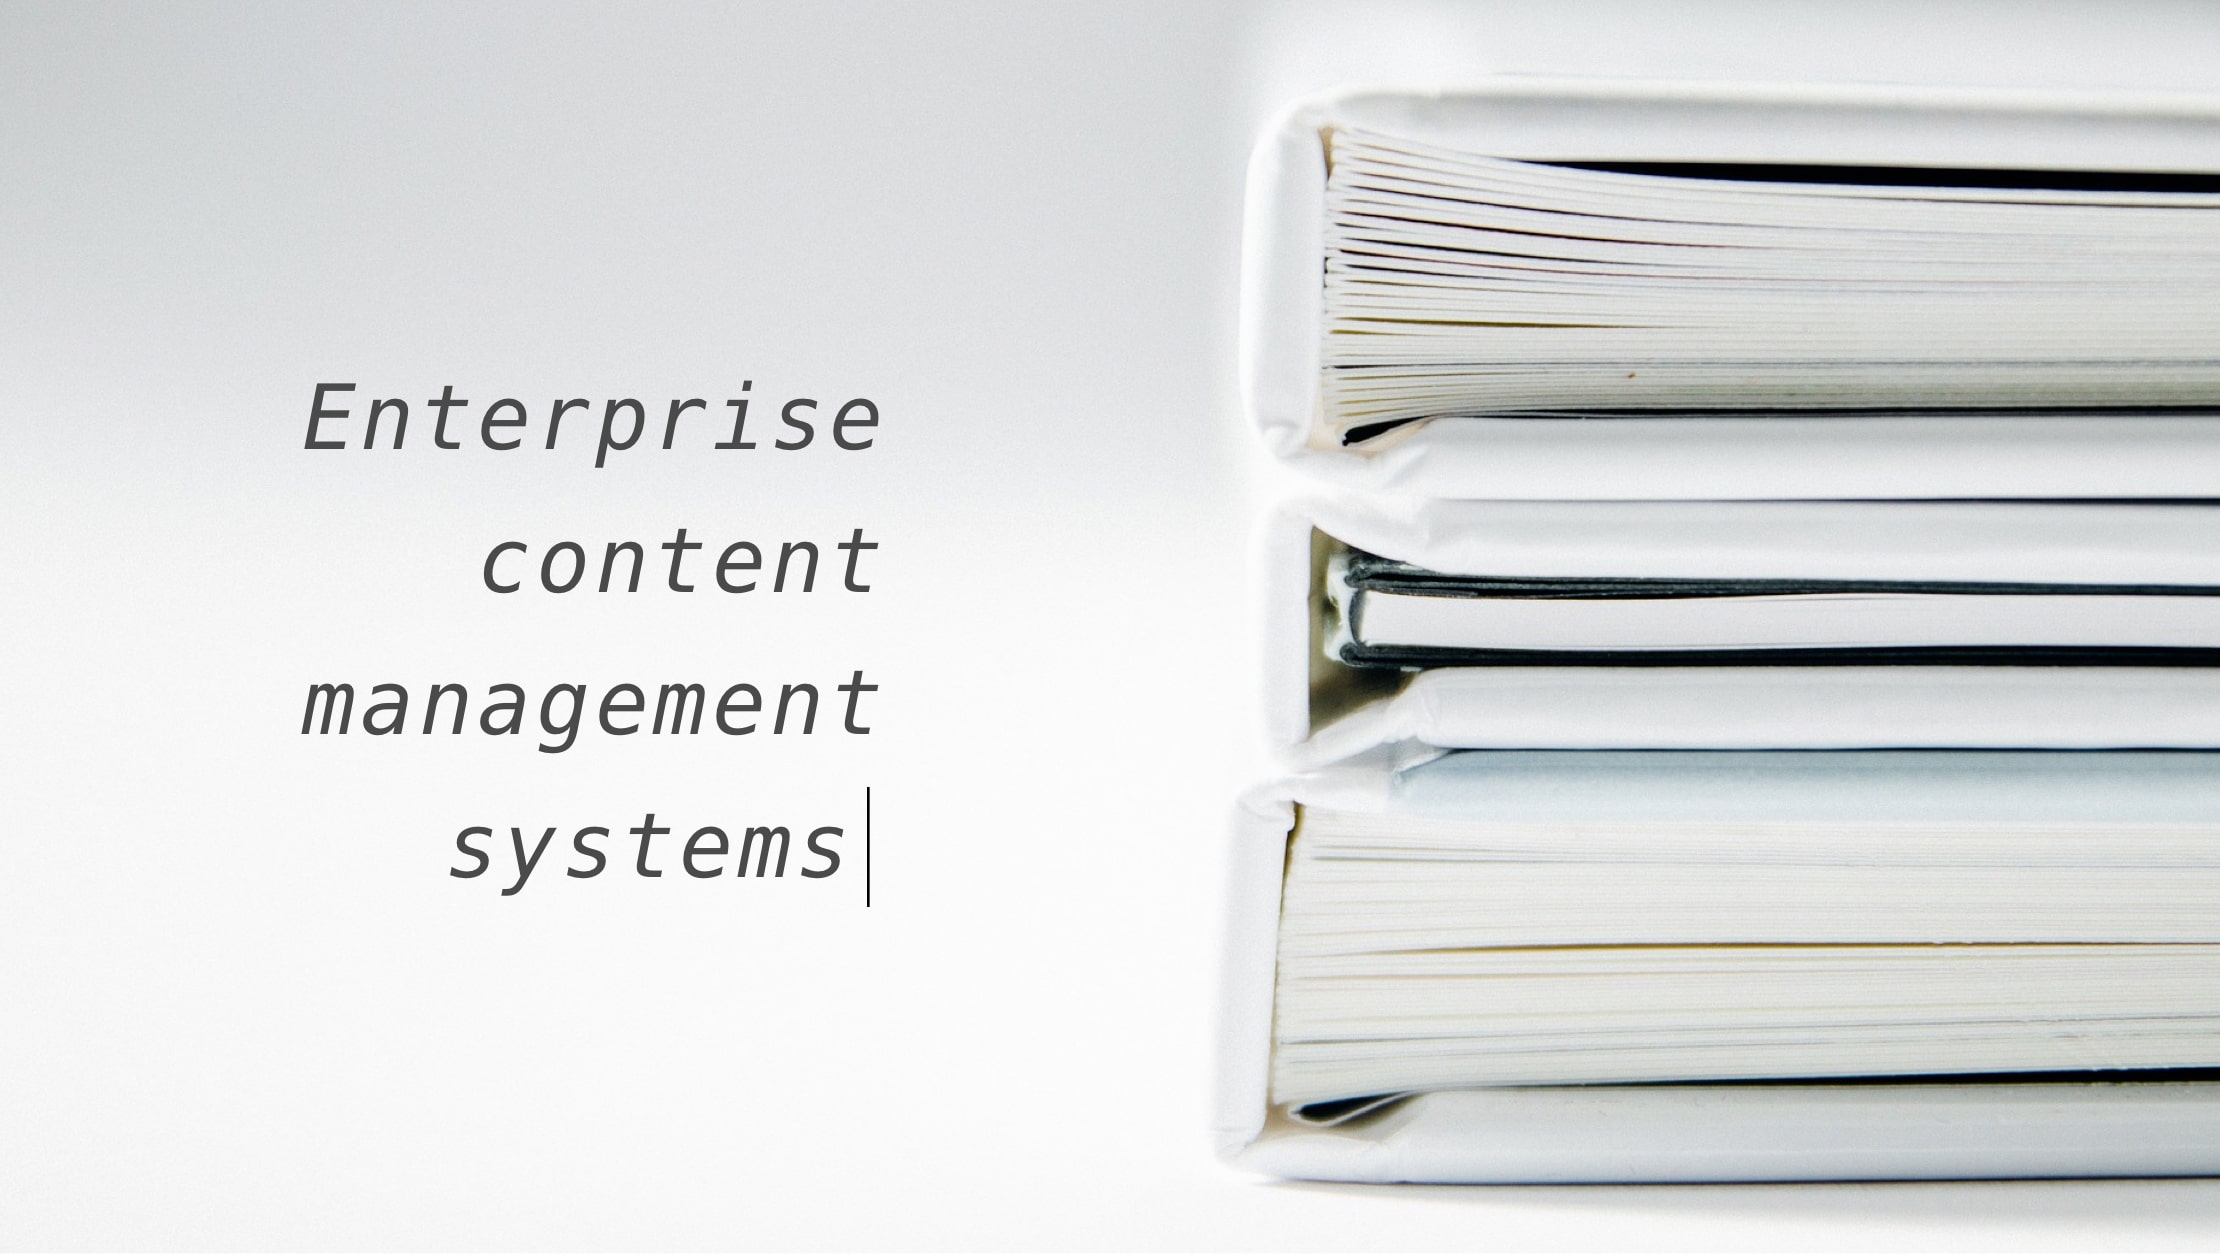 Enterprise content management systems overview and comparison